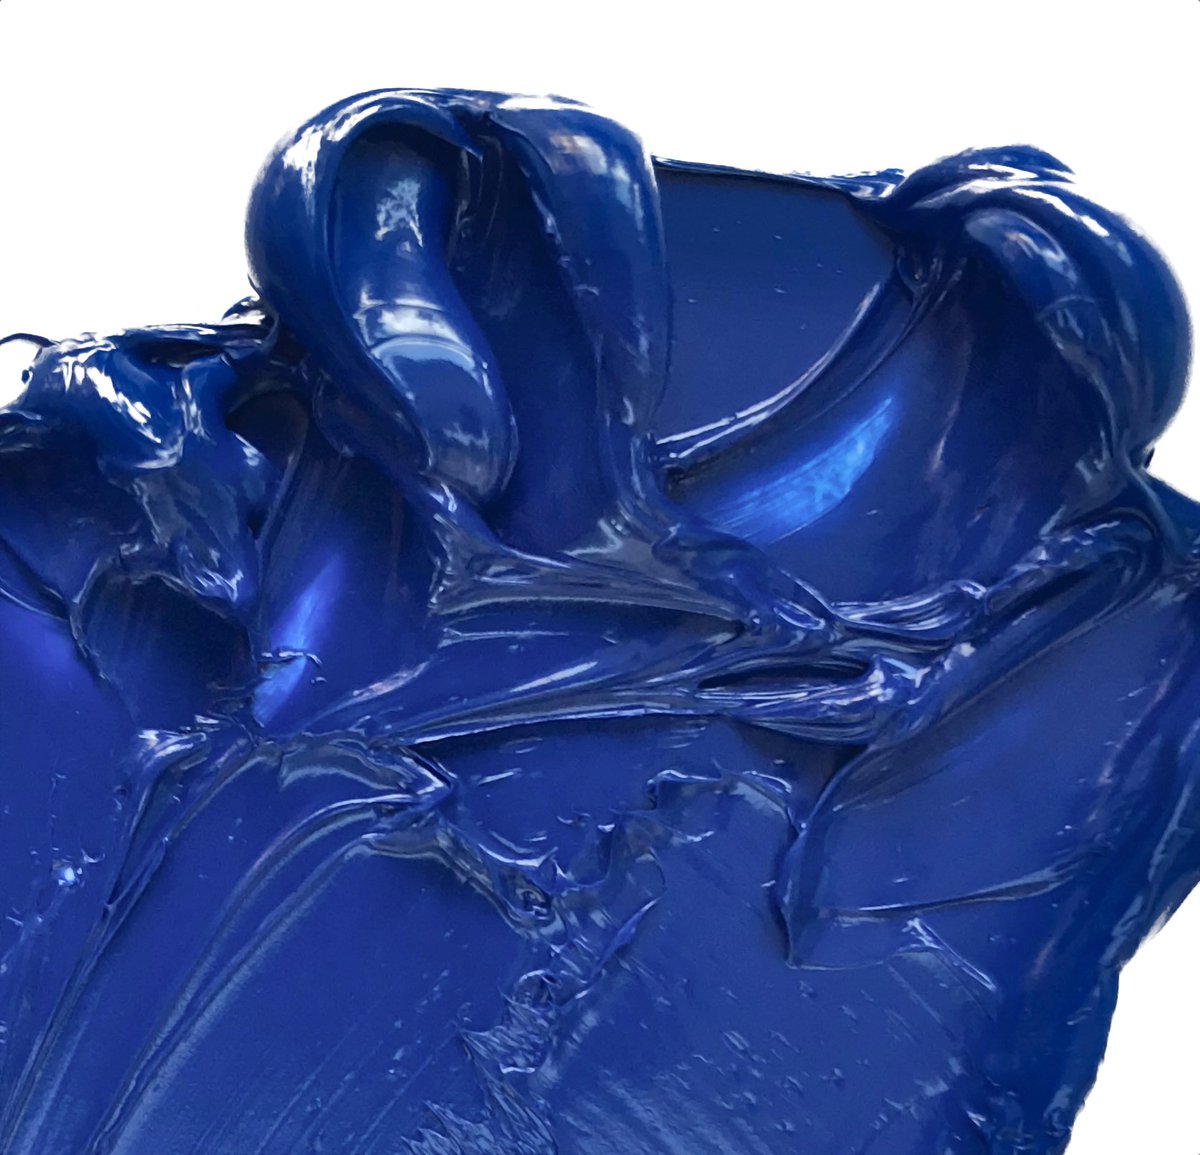 El azul cobalto, conocido por su moderada fuerza de tintado, es genial para mezclas de color discretas. Conoce los datos más curiosos entorno a este pigmento aquí: bit.ly/38ZrRsv via @thefineartspain